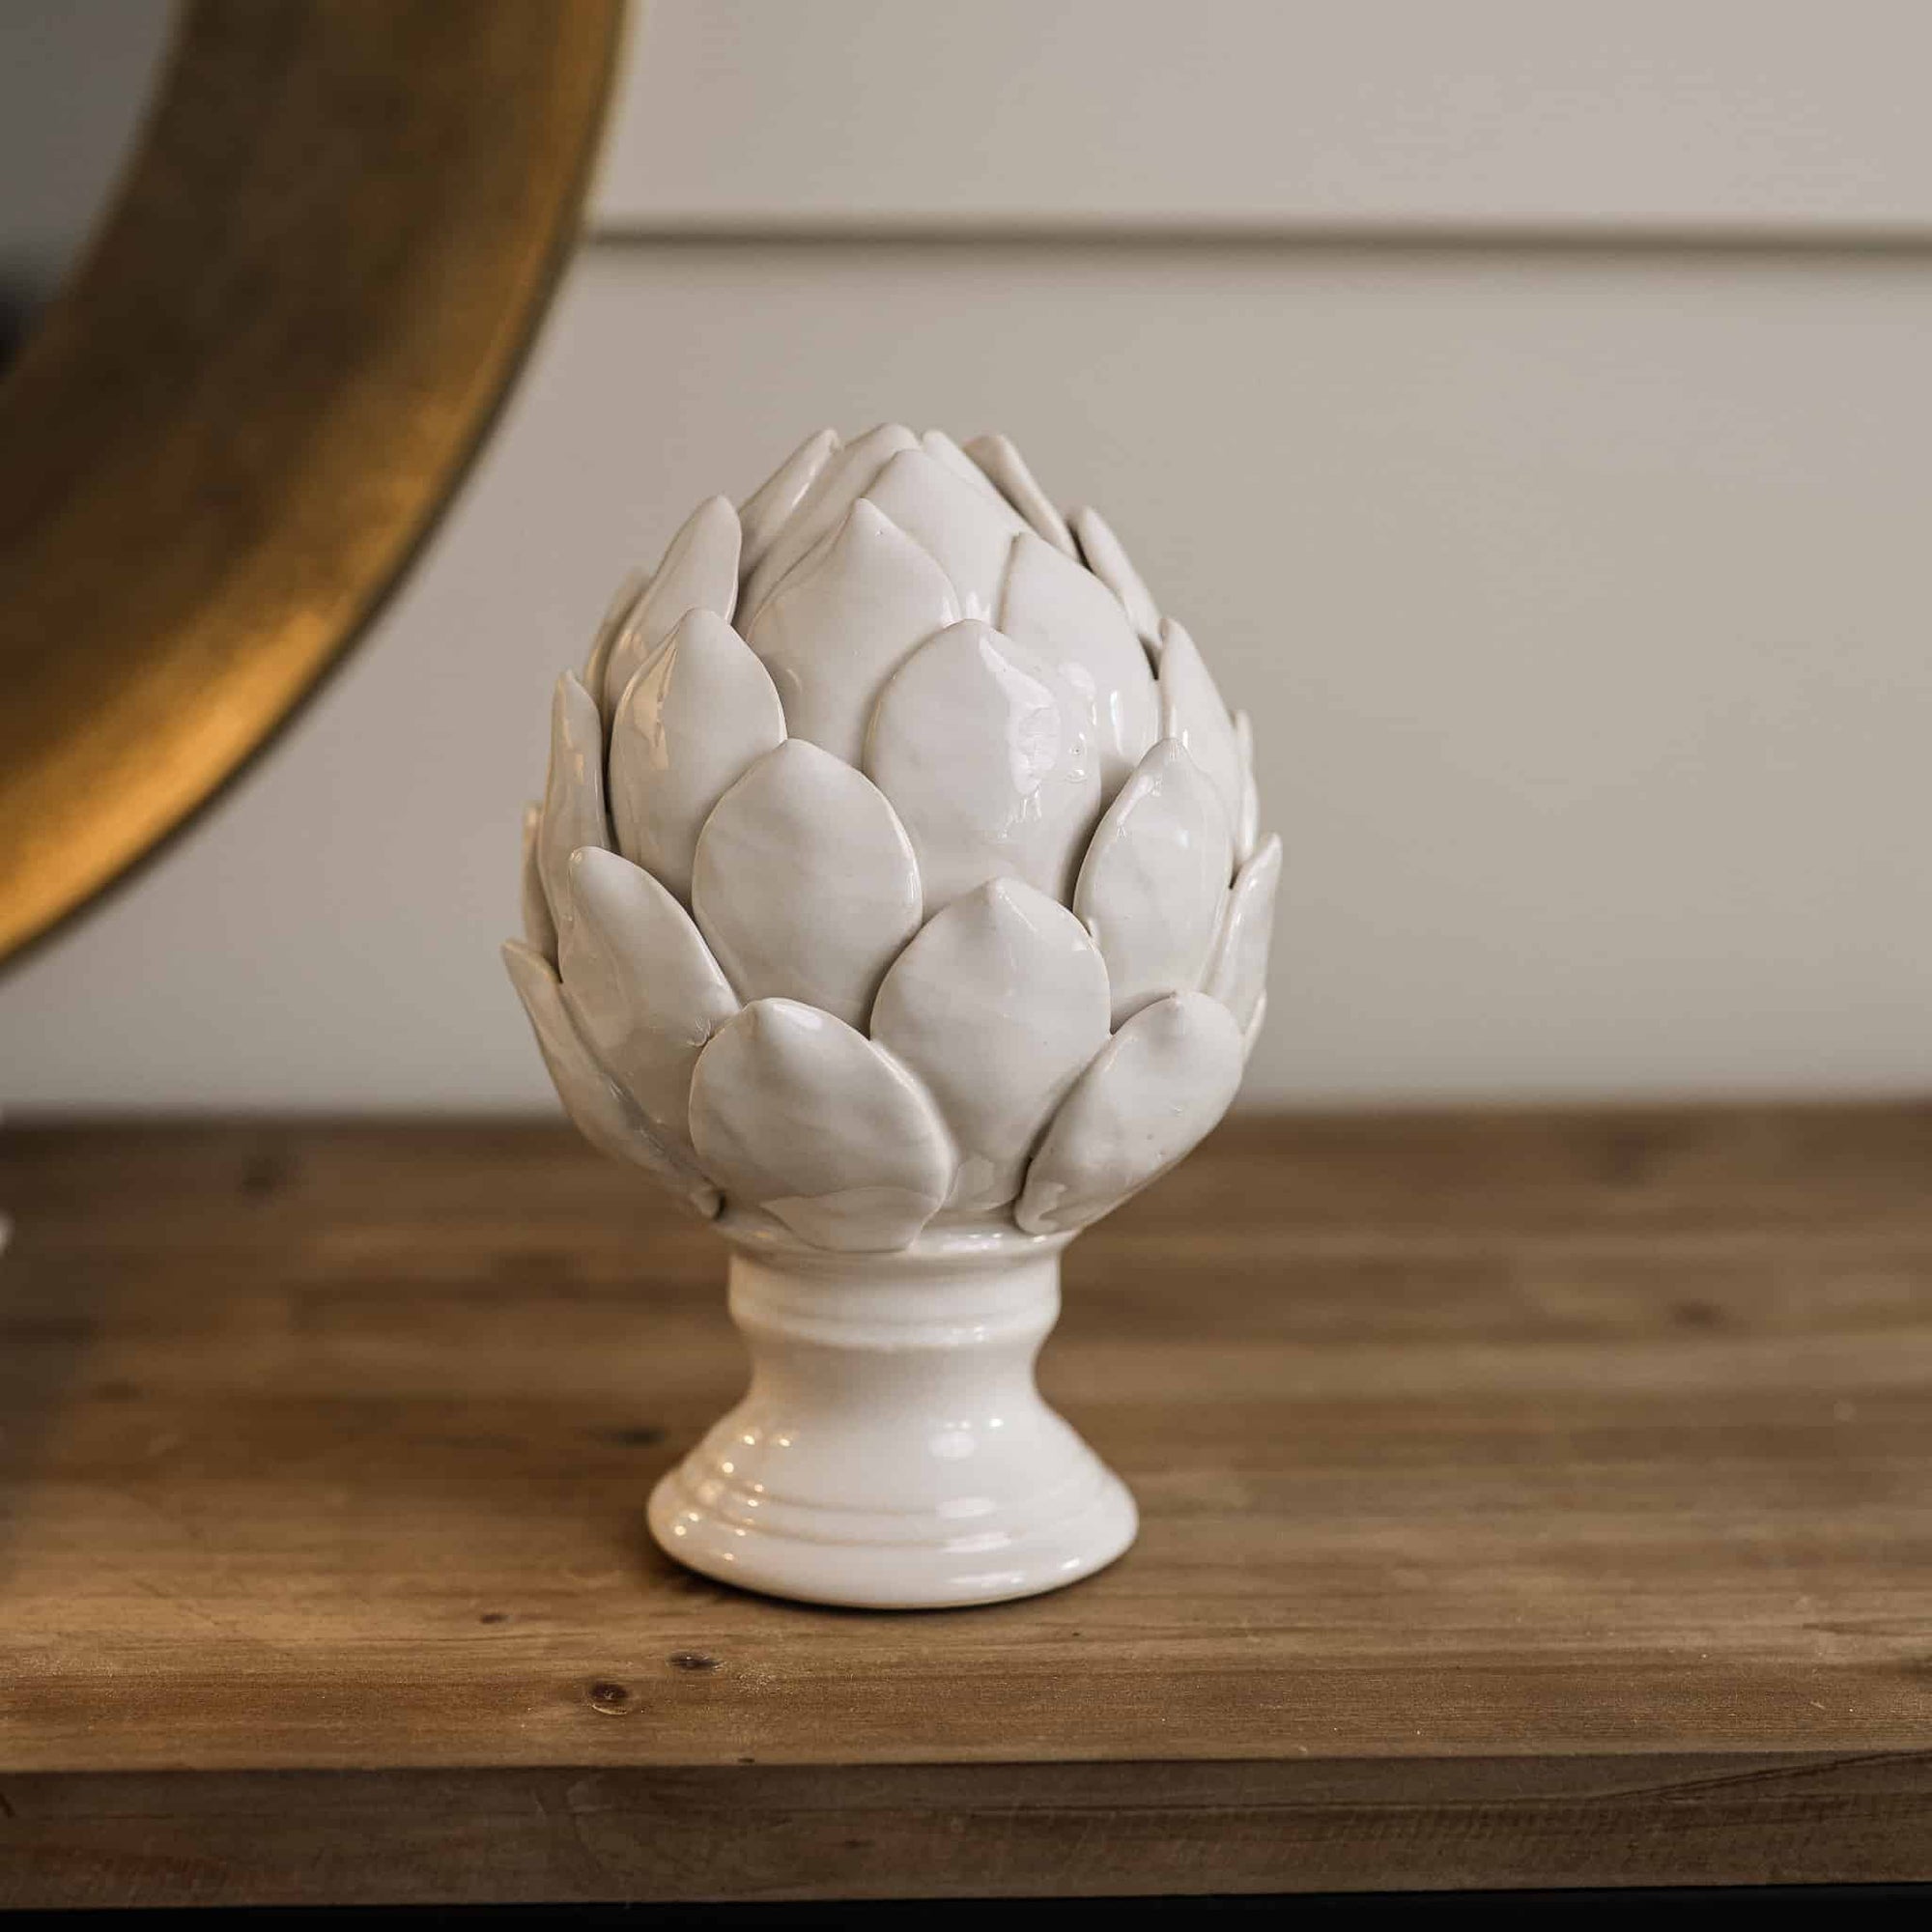 White ceramic artichoke ornament on stand on wooden console.